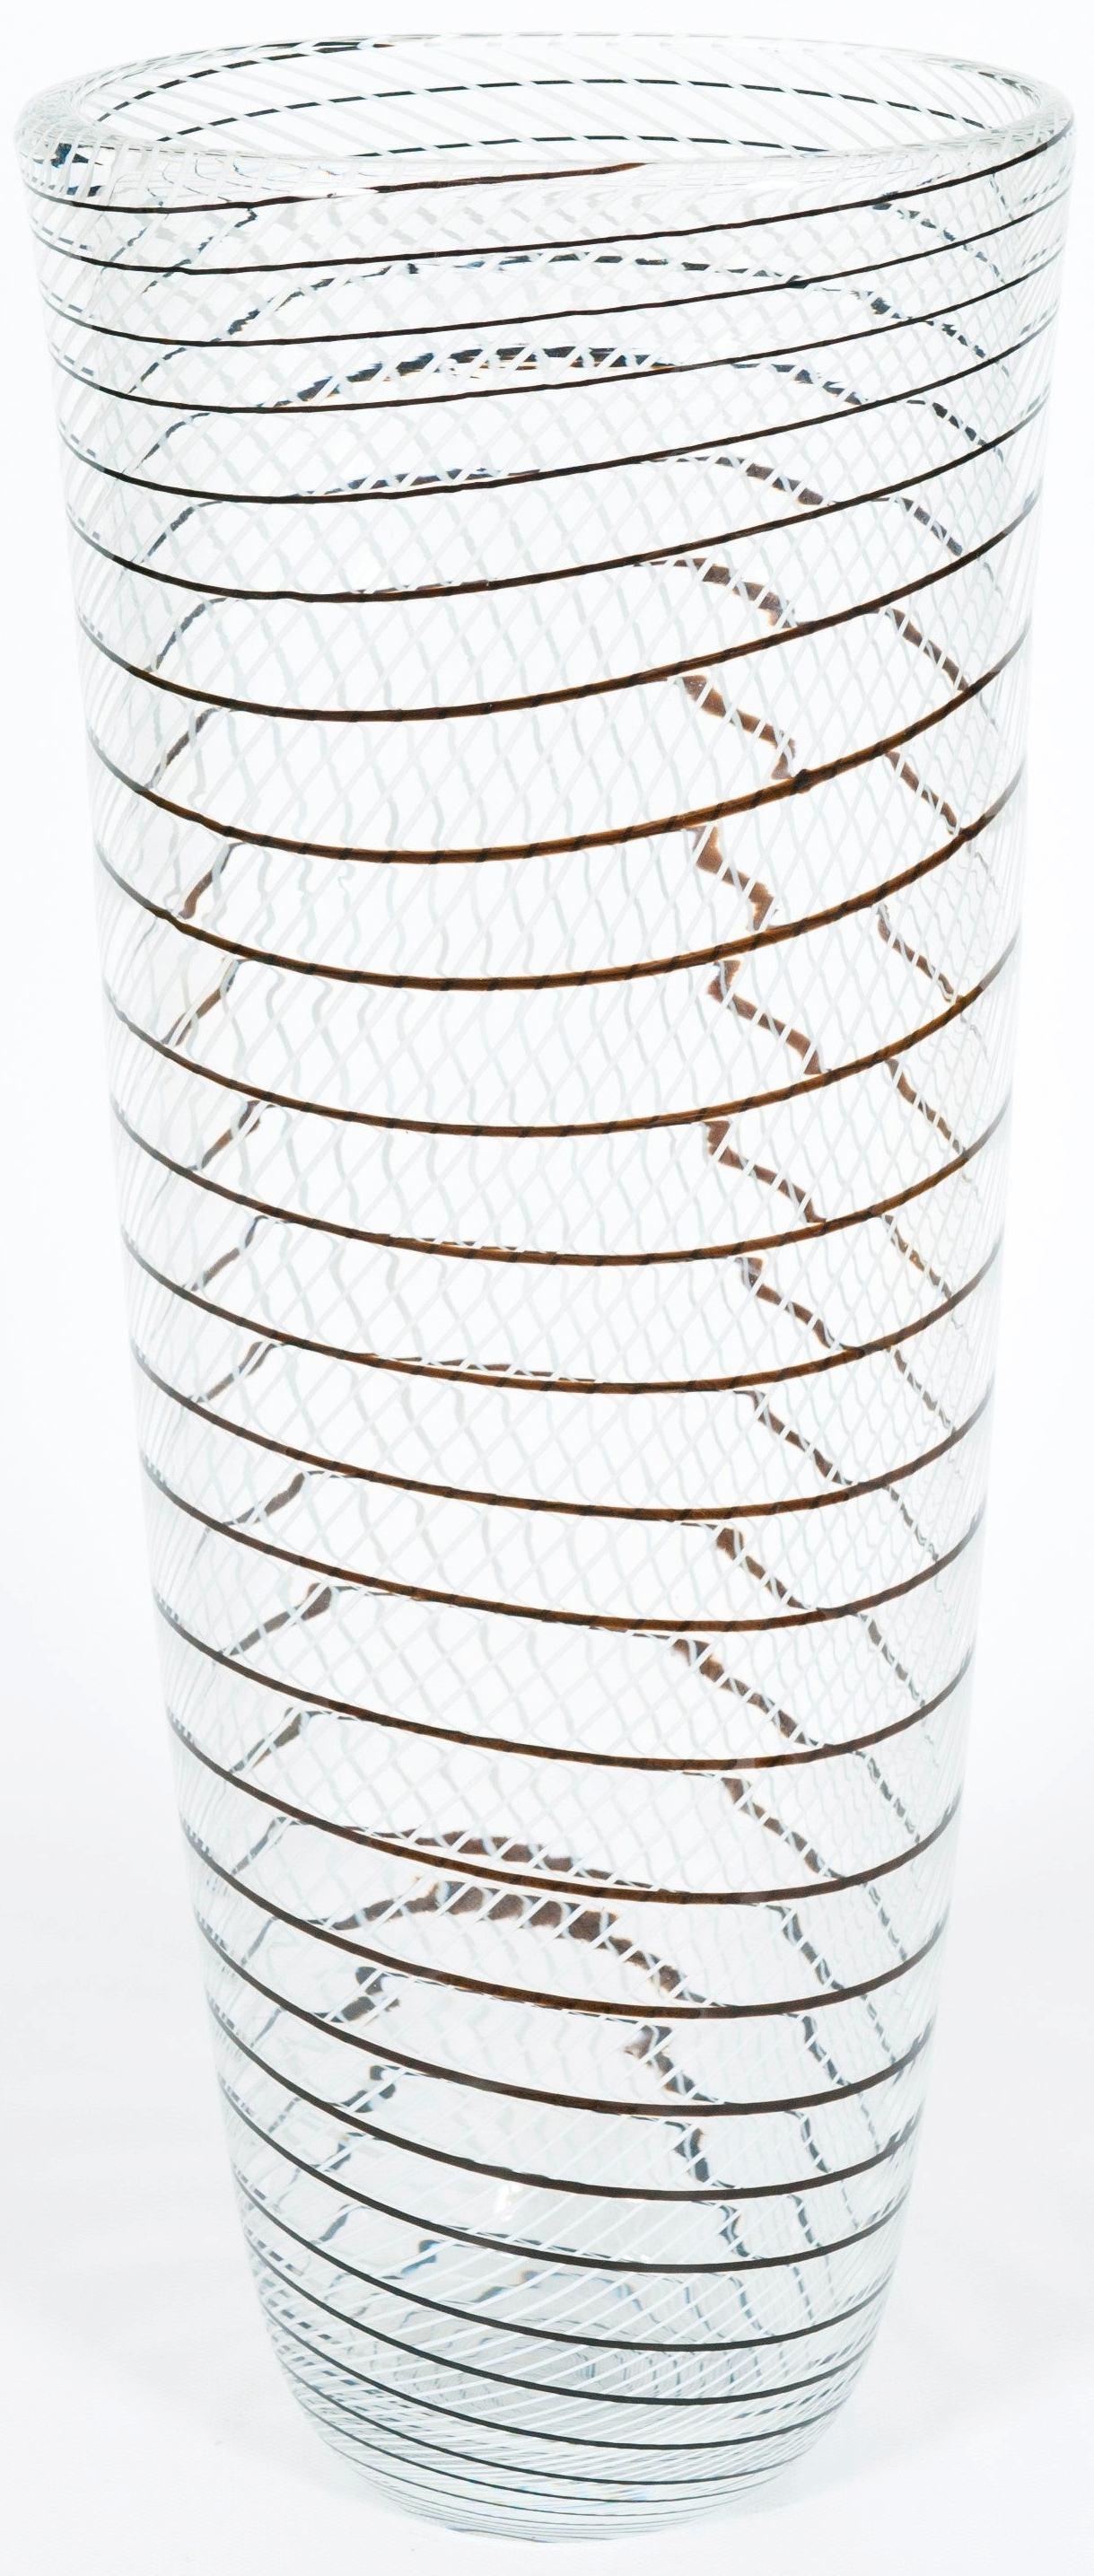 Künstlerische Vase aus transparentem Murano-Glas mit schwarzen und weißen Mustern, 1990er Jahre.
Diese künstlerische Vase ist ein einzigartiges und besonderes Objekt, perfekt für einen raffinierten Murano-Glas-Liebhaber. Seine Form ist oval, und